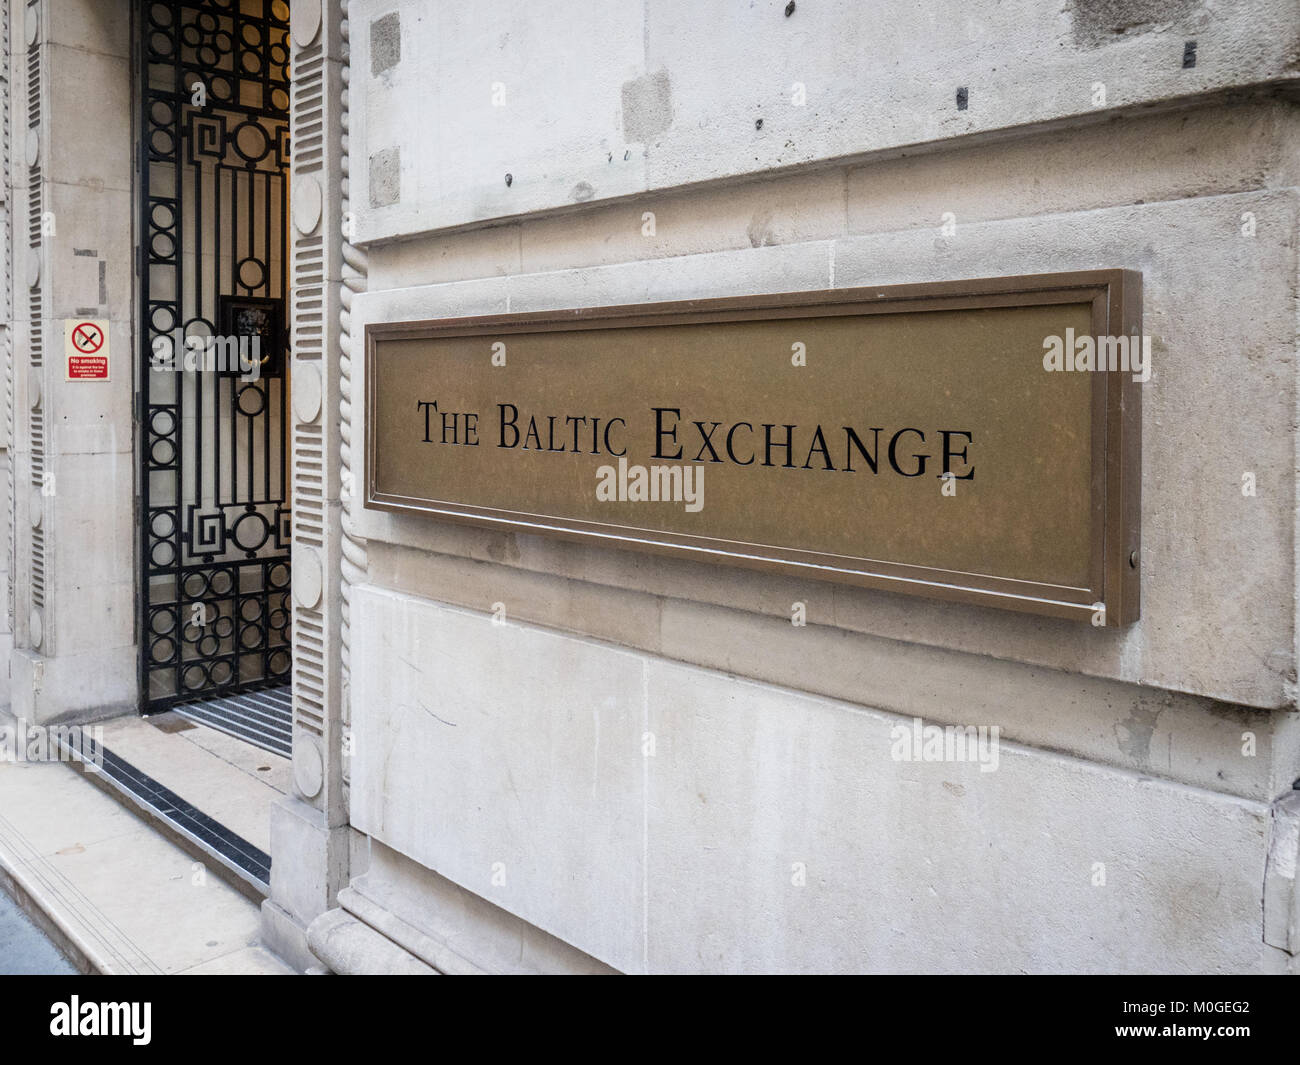 Baltic Exchange London - eine Schifffahrt Mitgliedschaft Organisation und Schienengüterverkehr Informationen Anbieter, im Jahre 1744 gegründet. Stockfoto